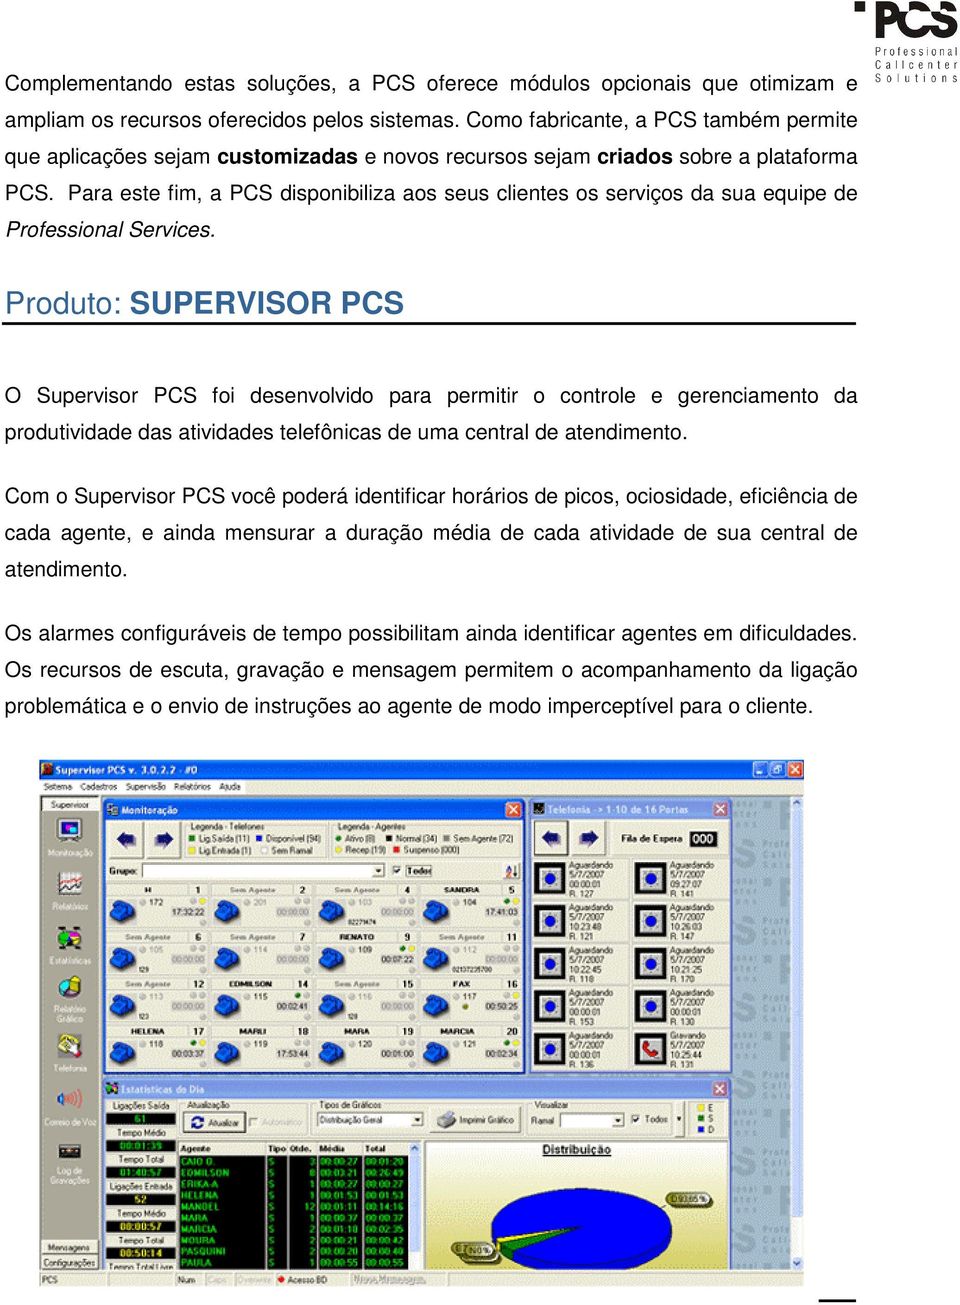 Para este fim, a PCS disponibiliza aos seus clientes os serviços da sua equipe de Professional Services.